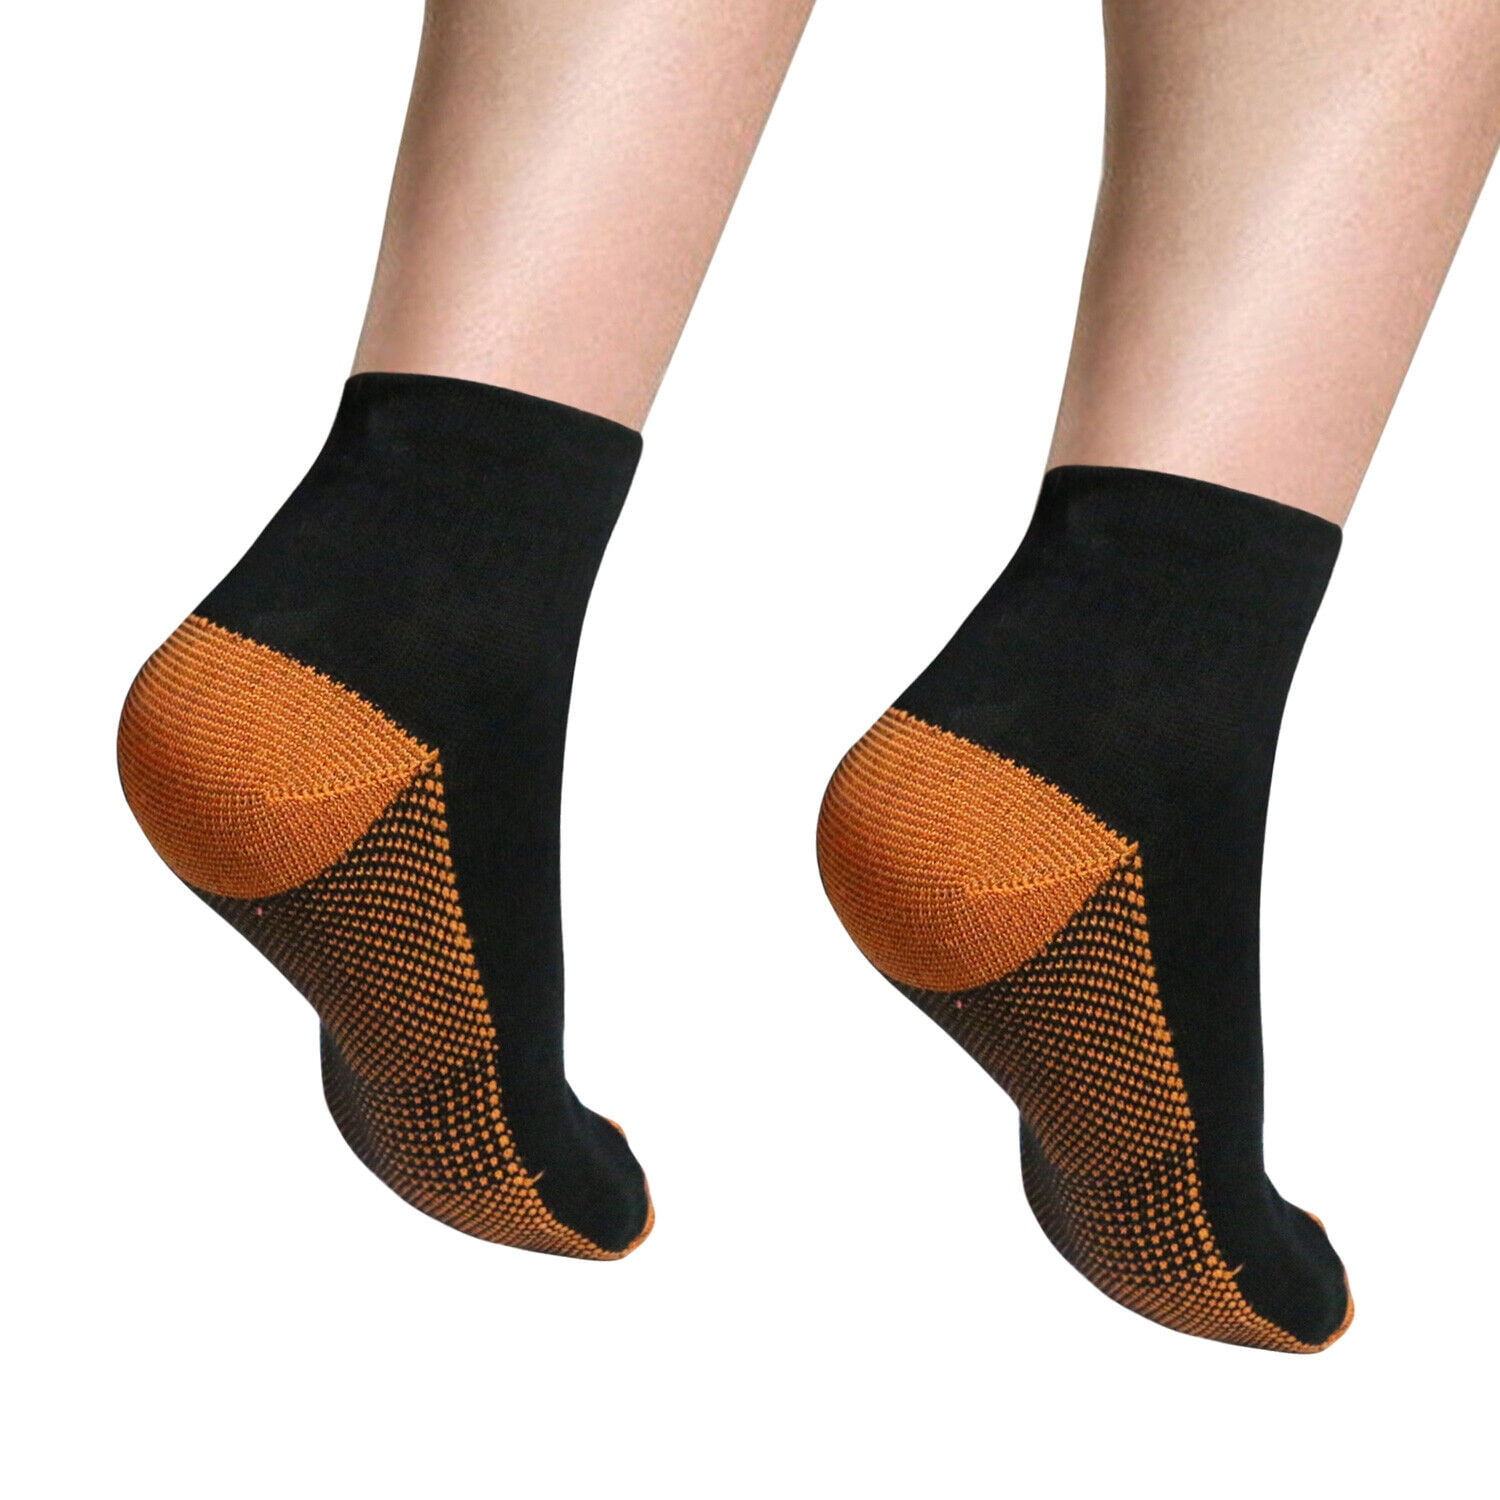 IWA 2900 Short Compression Sleeve Gymnastic Socks - Plantar